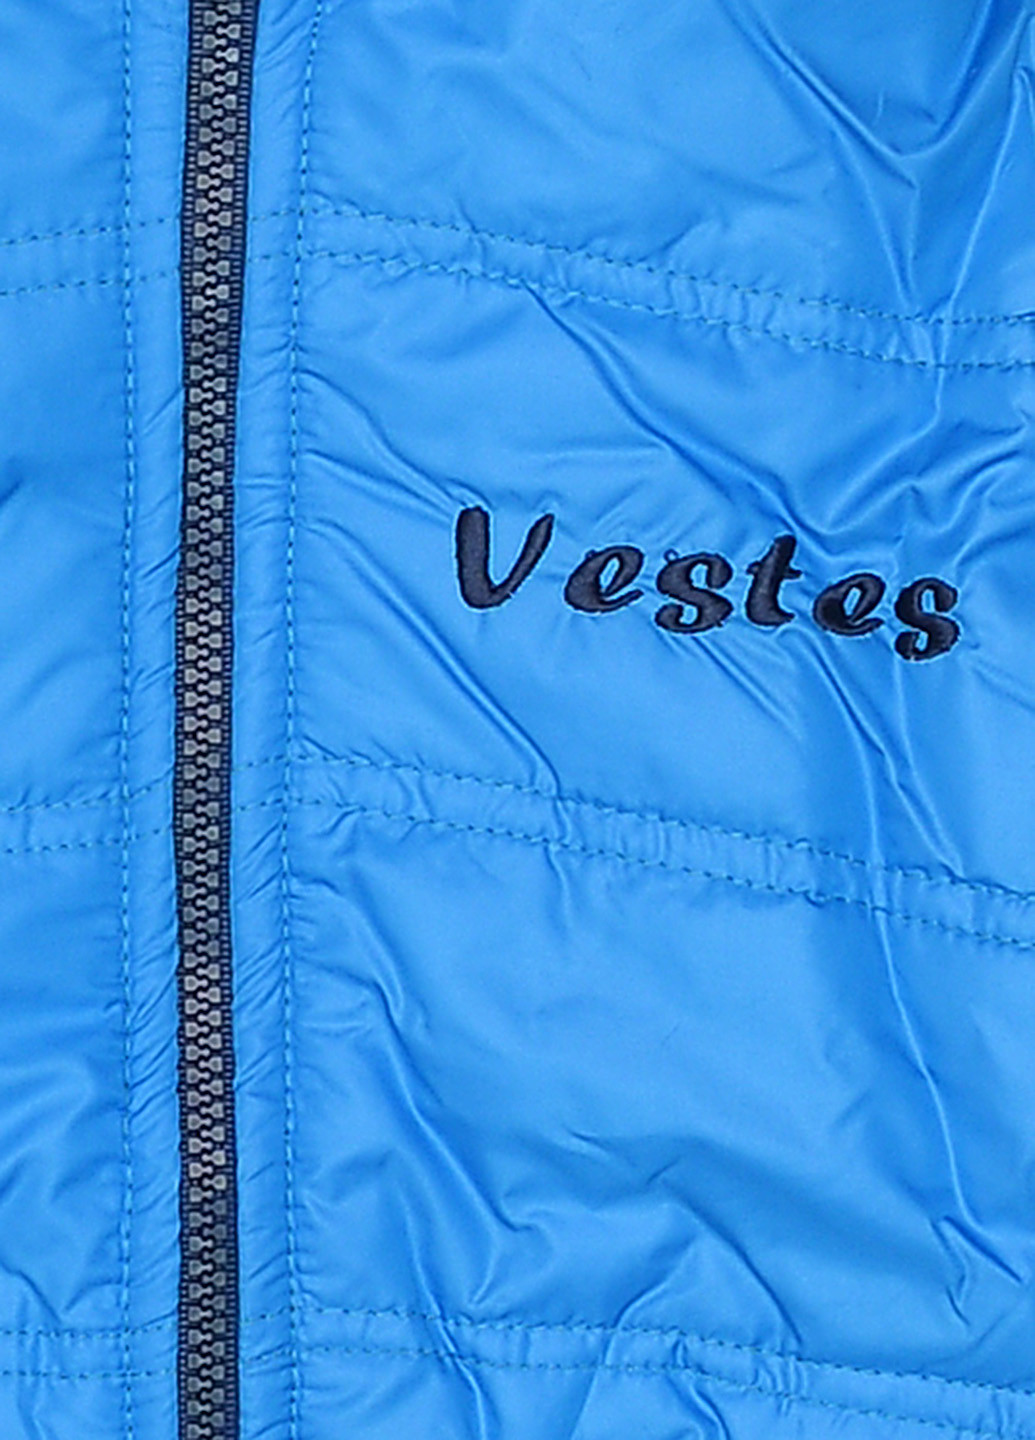 Блакитна демісезонна куртка "вестес" Vestes